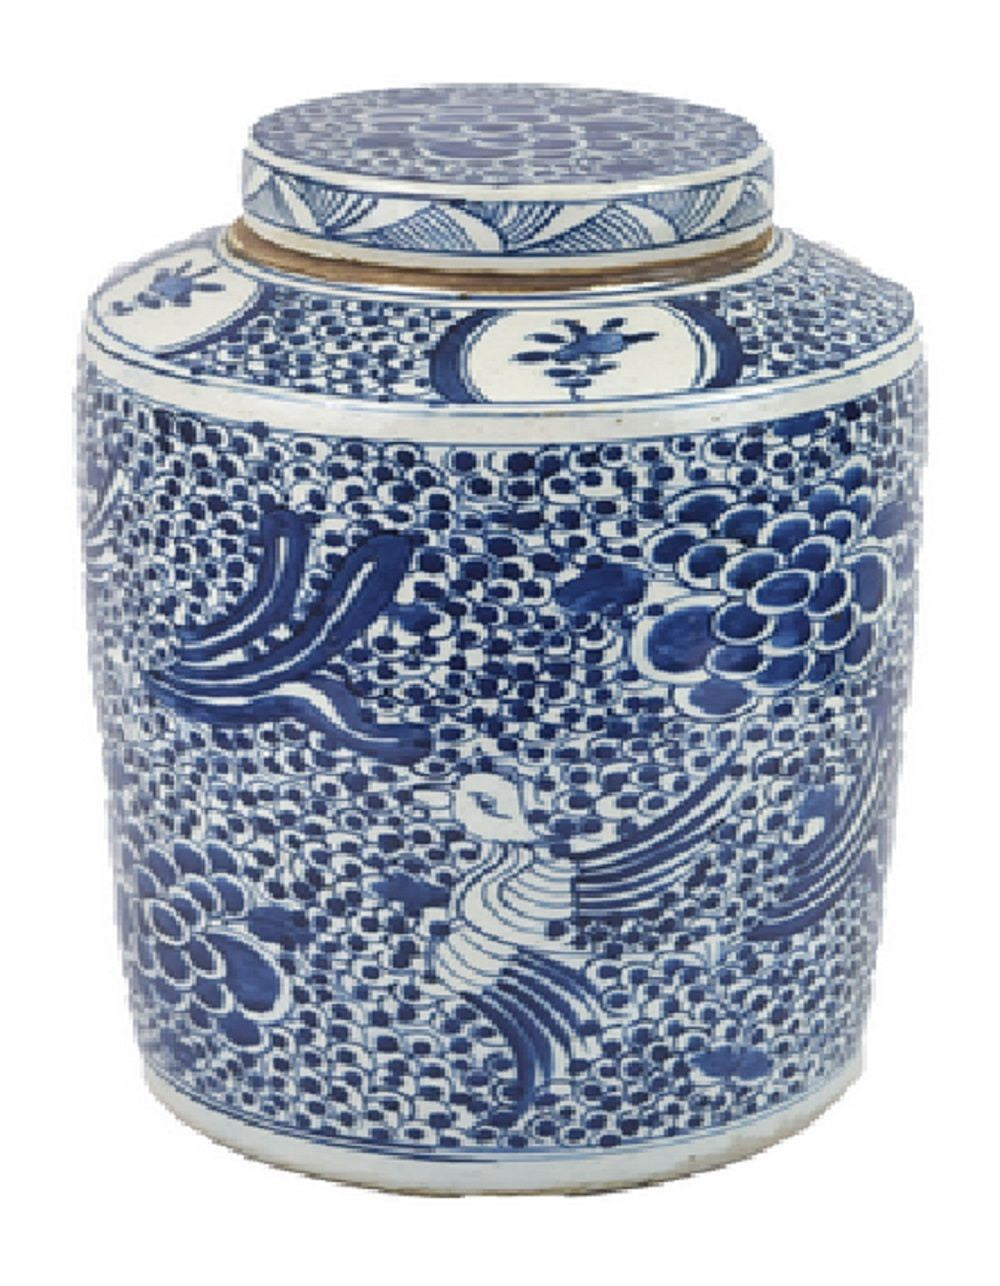 Vintage Style Blue and White Phoenix Motif Porcelain Tea Caddy Jar 17"